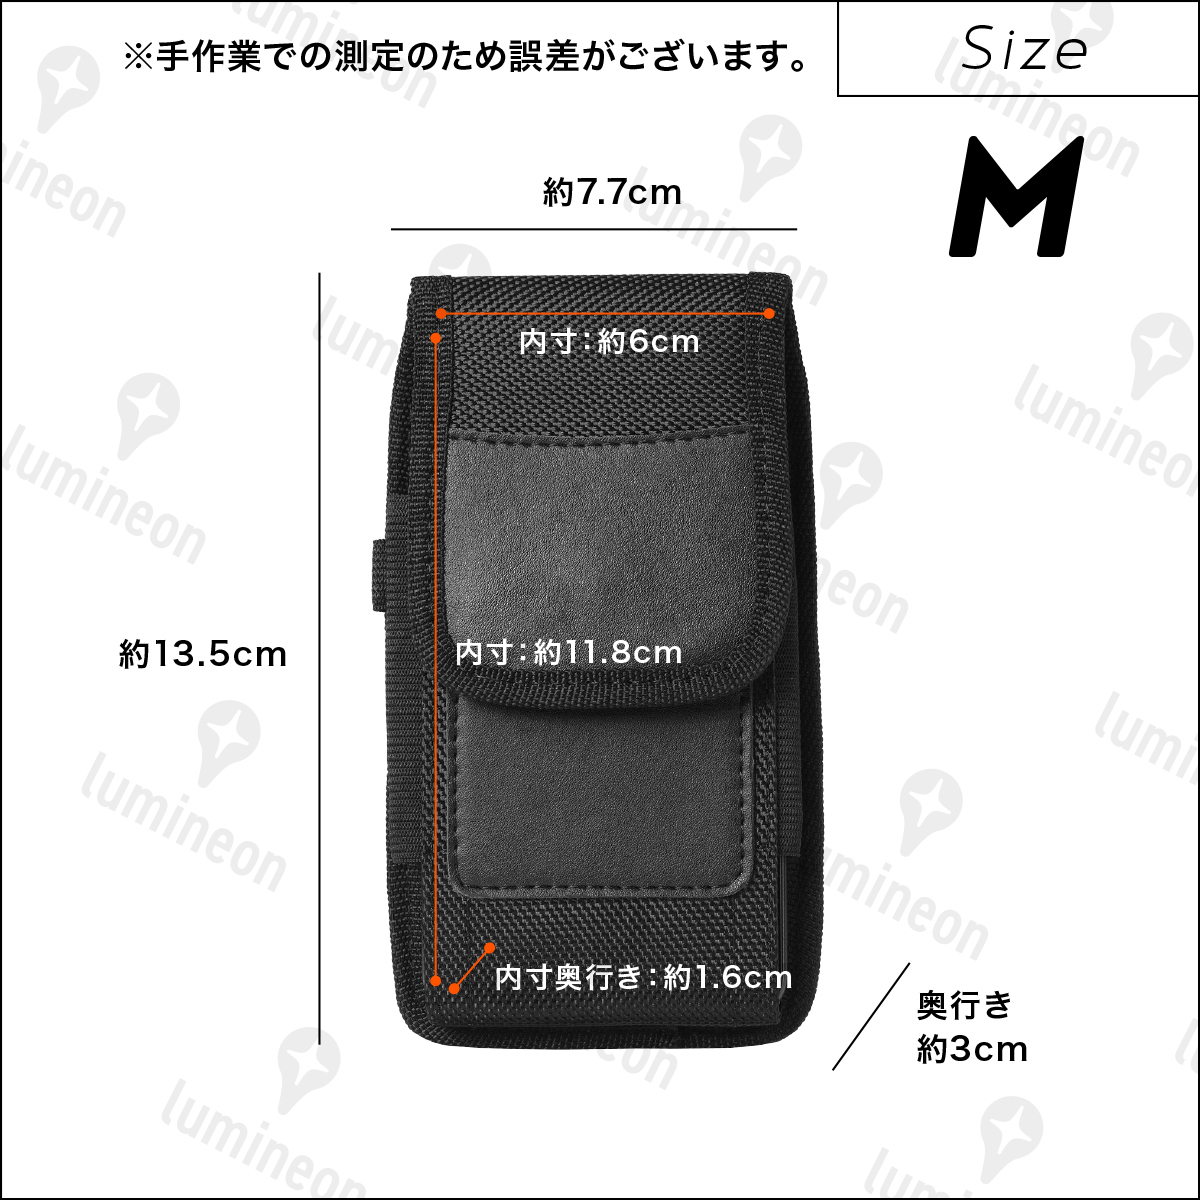 スマホ ケース ウエスト ポーチ 携帯 電話 ボディ バッグ ホルダー メンズ ベルト スマホ入れ スマートフォン カラビナ 縦型 M g137b1 1の画像4